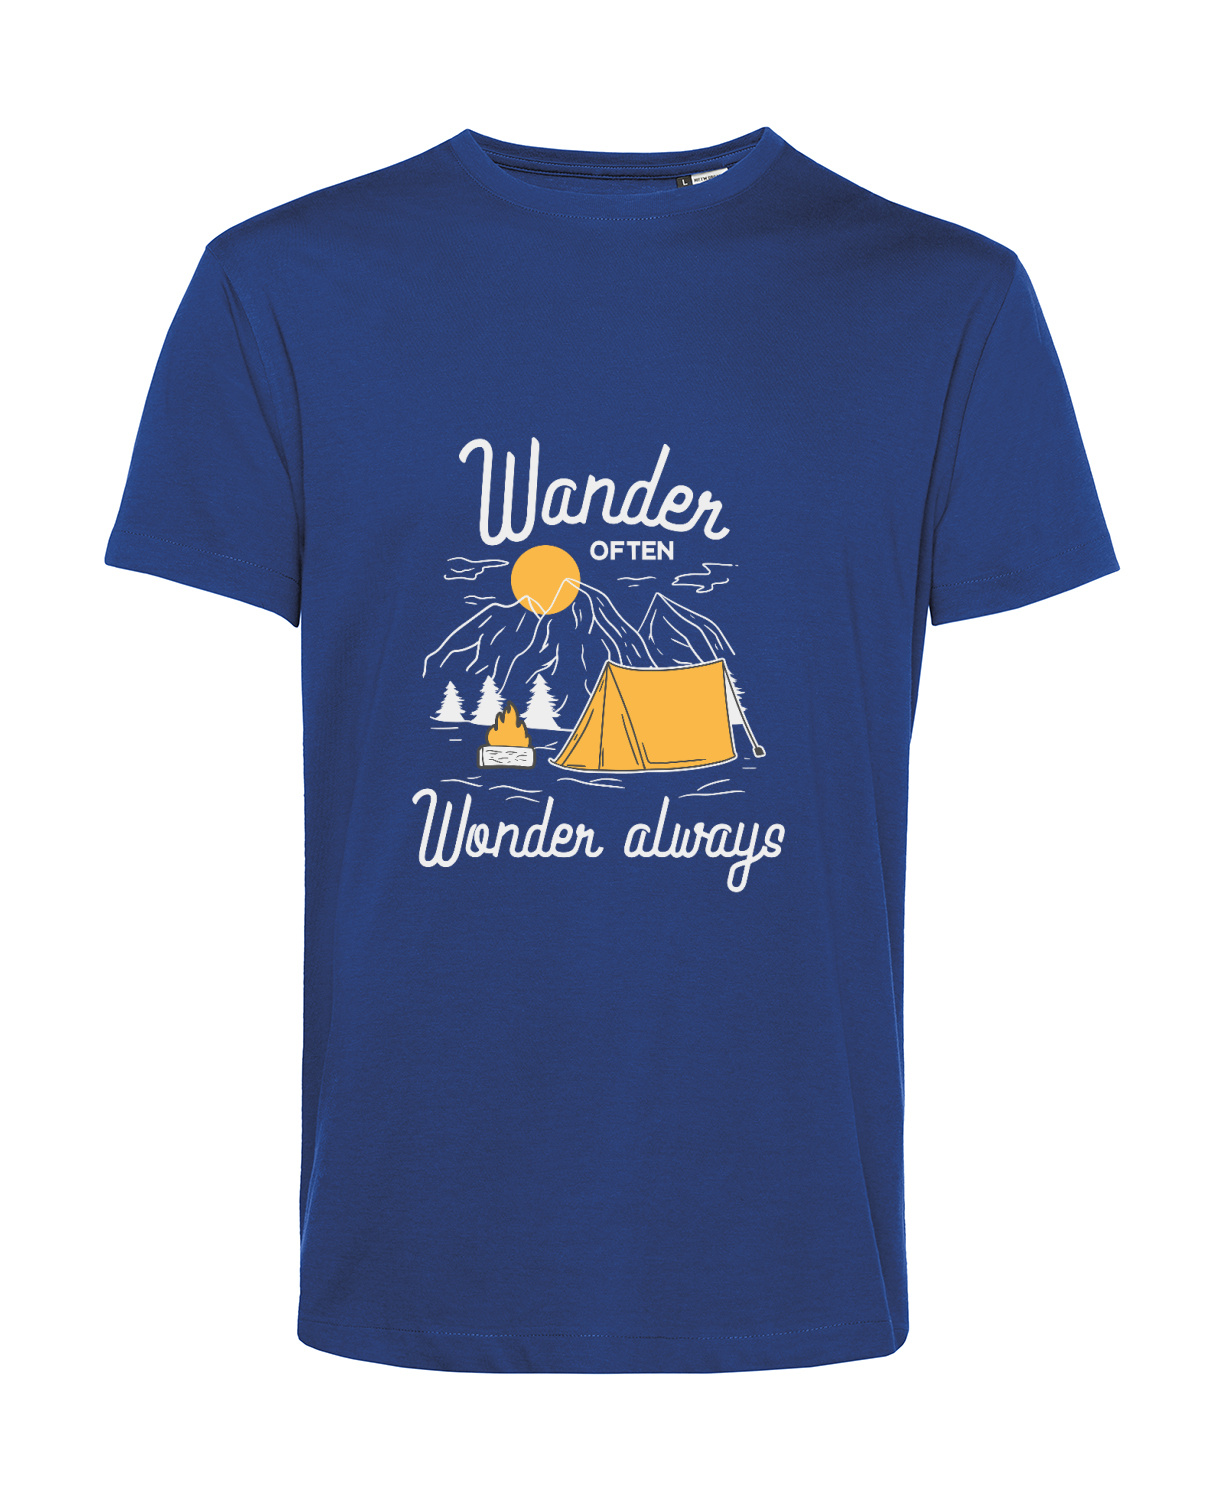 Nachhaltiges T-Shirt Herren Outdoor - Wander often - Wonder always